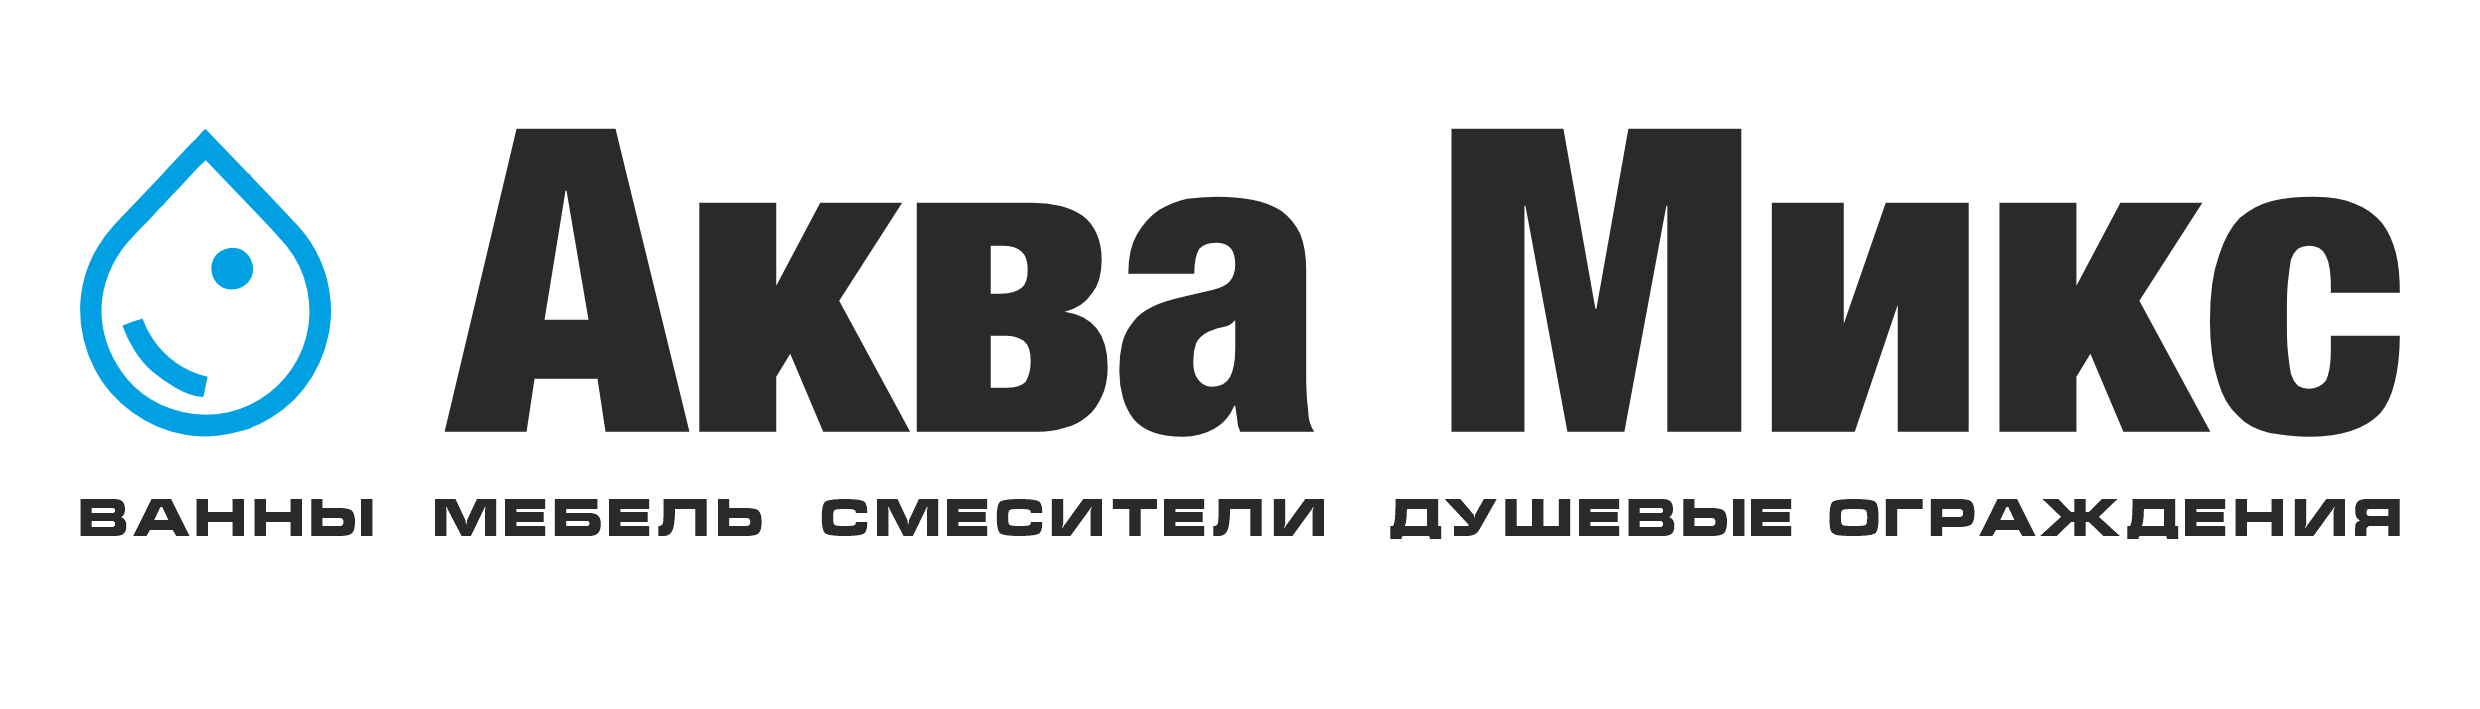 АкваМикс - магазин сантехники в Нижнем Новгороде